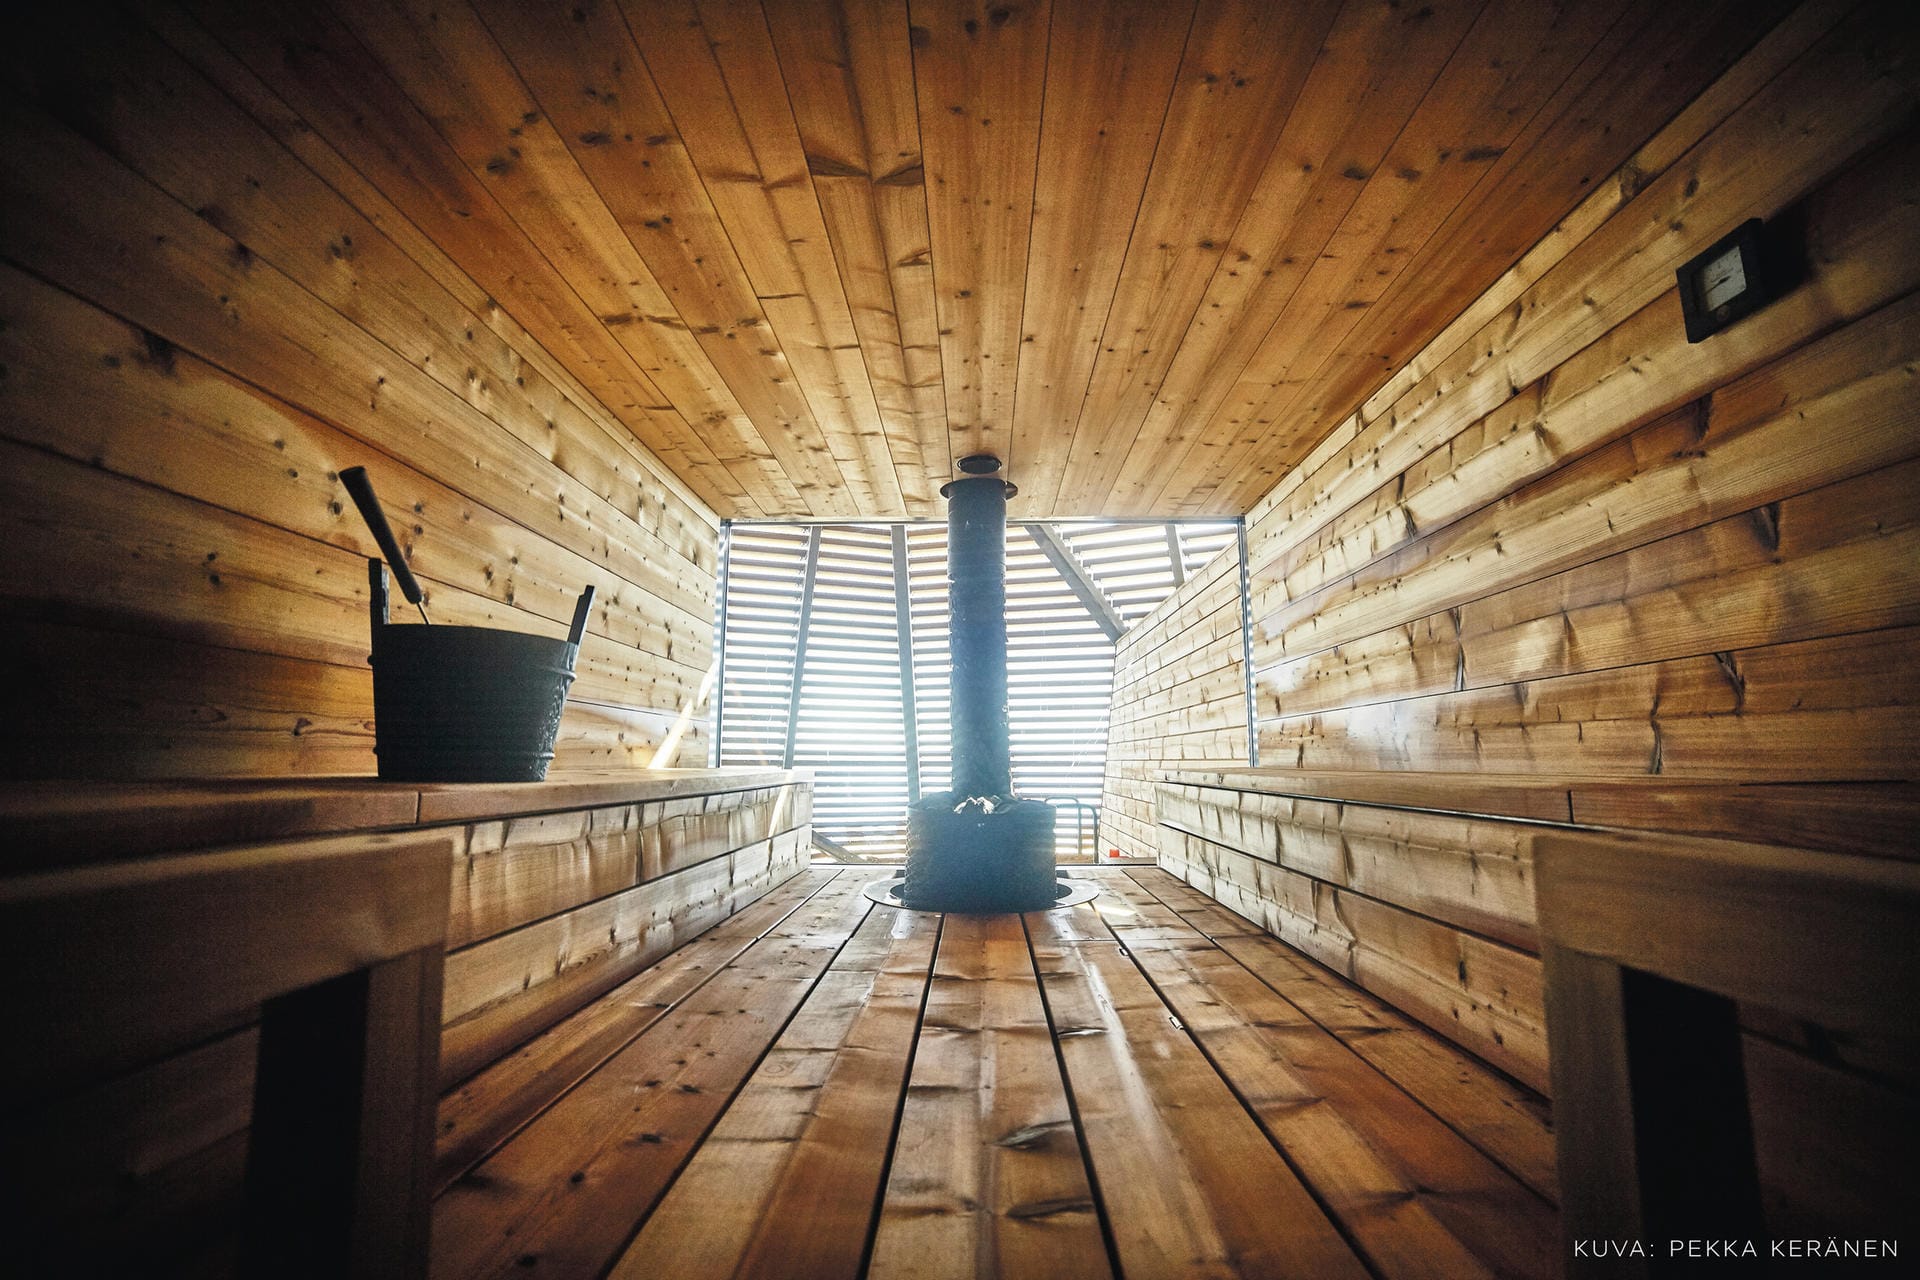 Der Innenraum der Sauna ist komplett aus Holz verkleidet, um die Feuchtigkeit aufzunehmen und wieder abzugeben. Kernstück ist der sogenannte "Kiuas", ein mit Steinen bedeckter Saunaofen. Er heizt den Raum bis zu einer maximalen Temperatur von 105 Grad Celsius an der Raumdecke auf. Die Luftfeuchtigkeit beträgt dabei zwei und fünf Prozent, kann aber durch den Aufguss kurzzeitig erhöht werden.